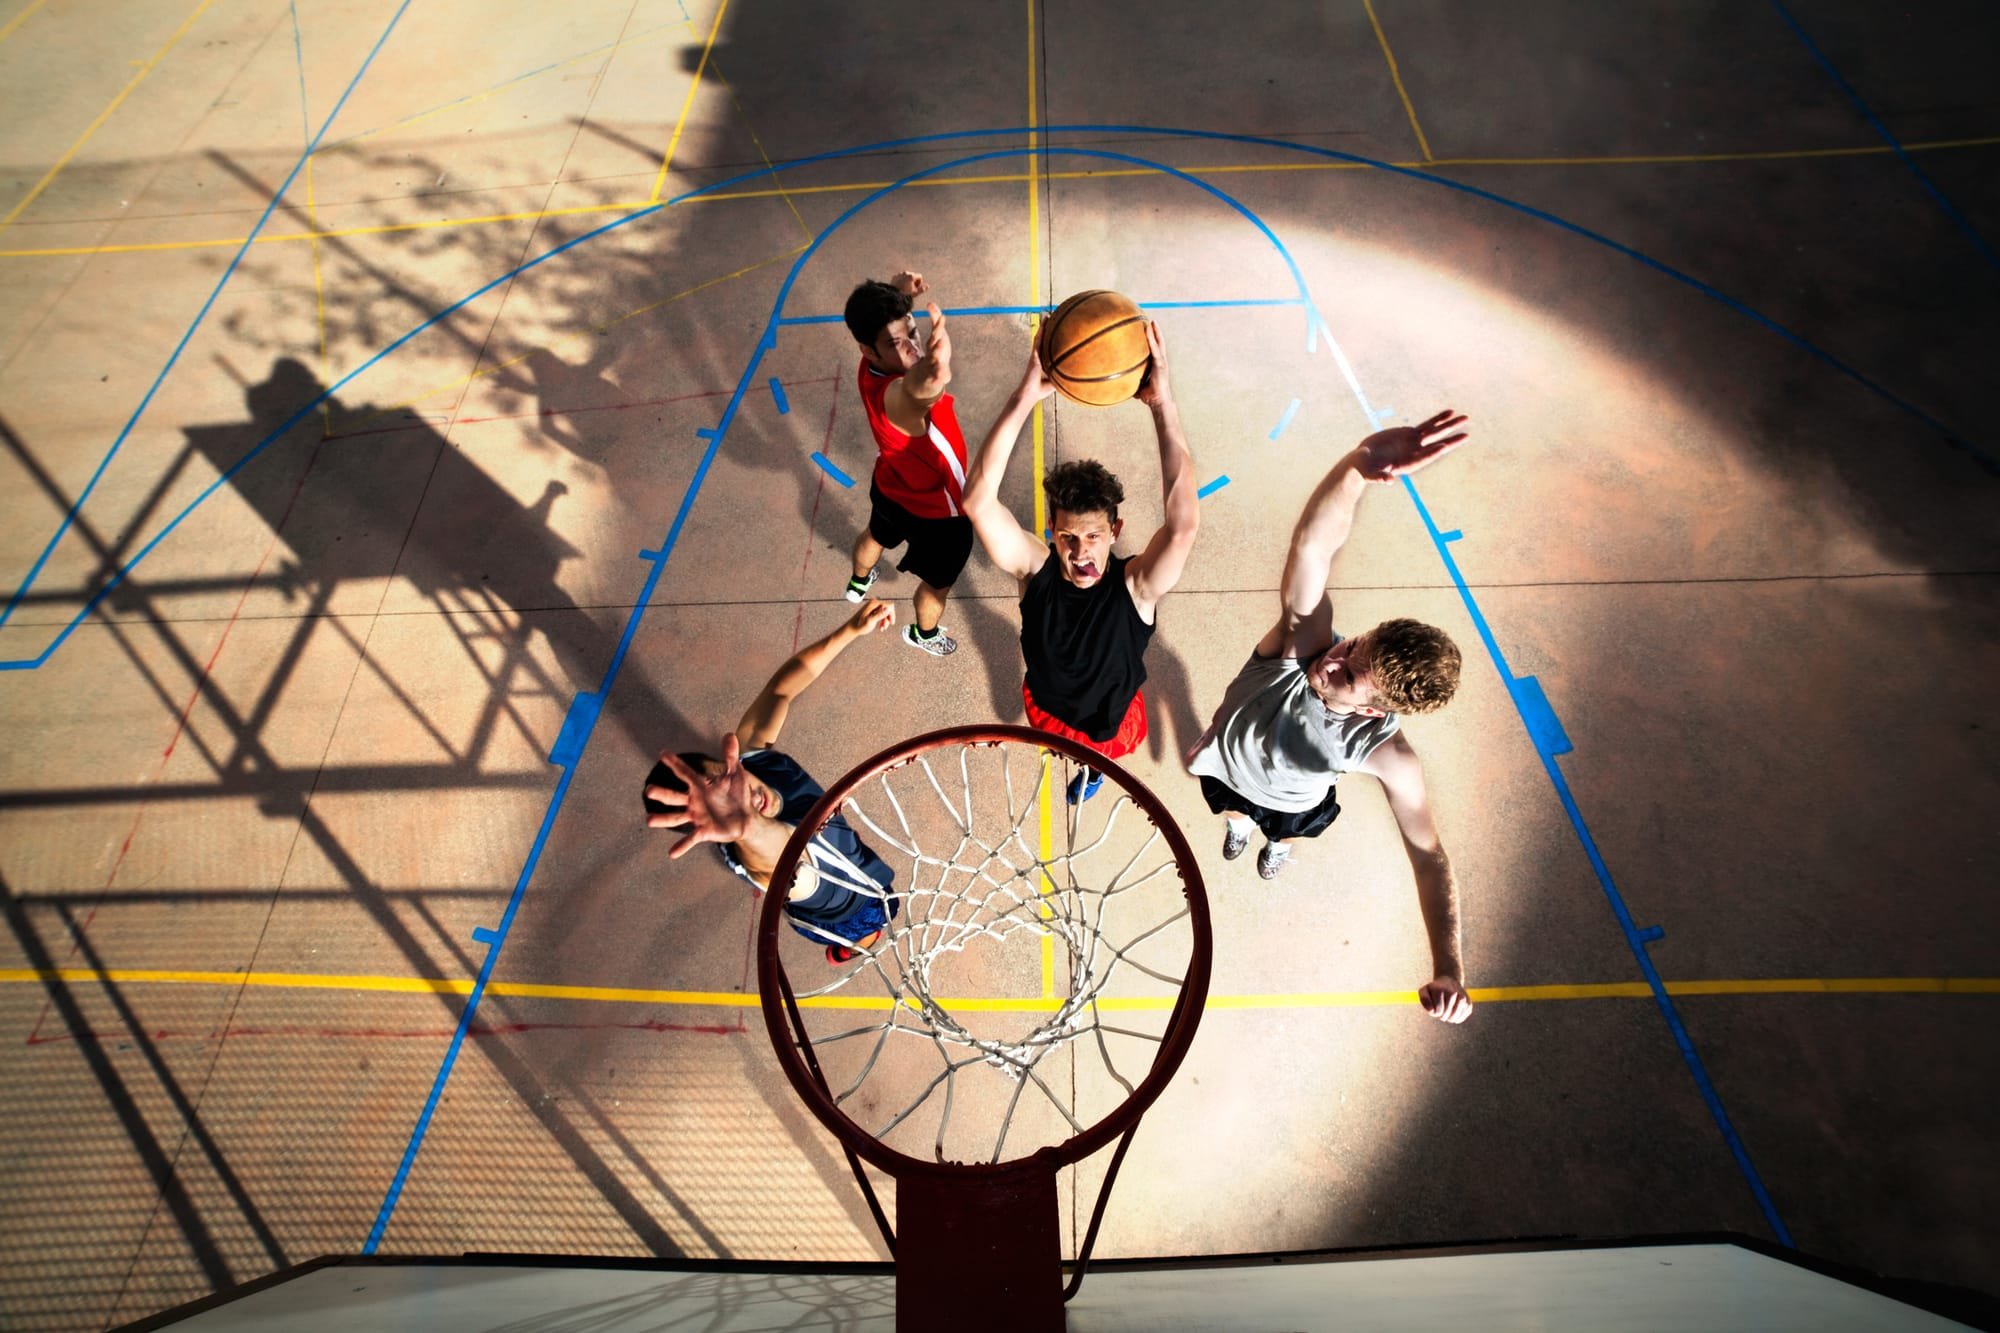 Street basket på Risenga i sommer!